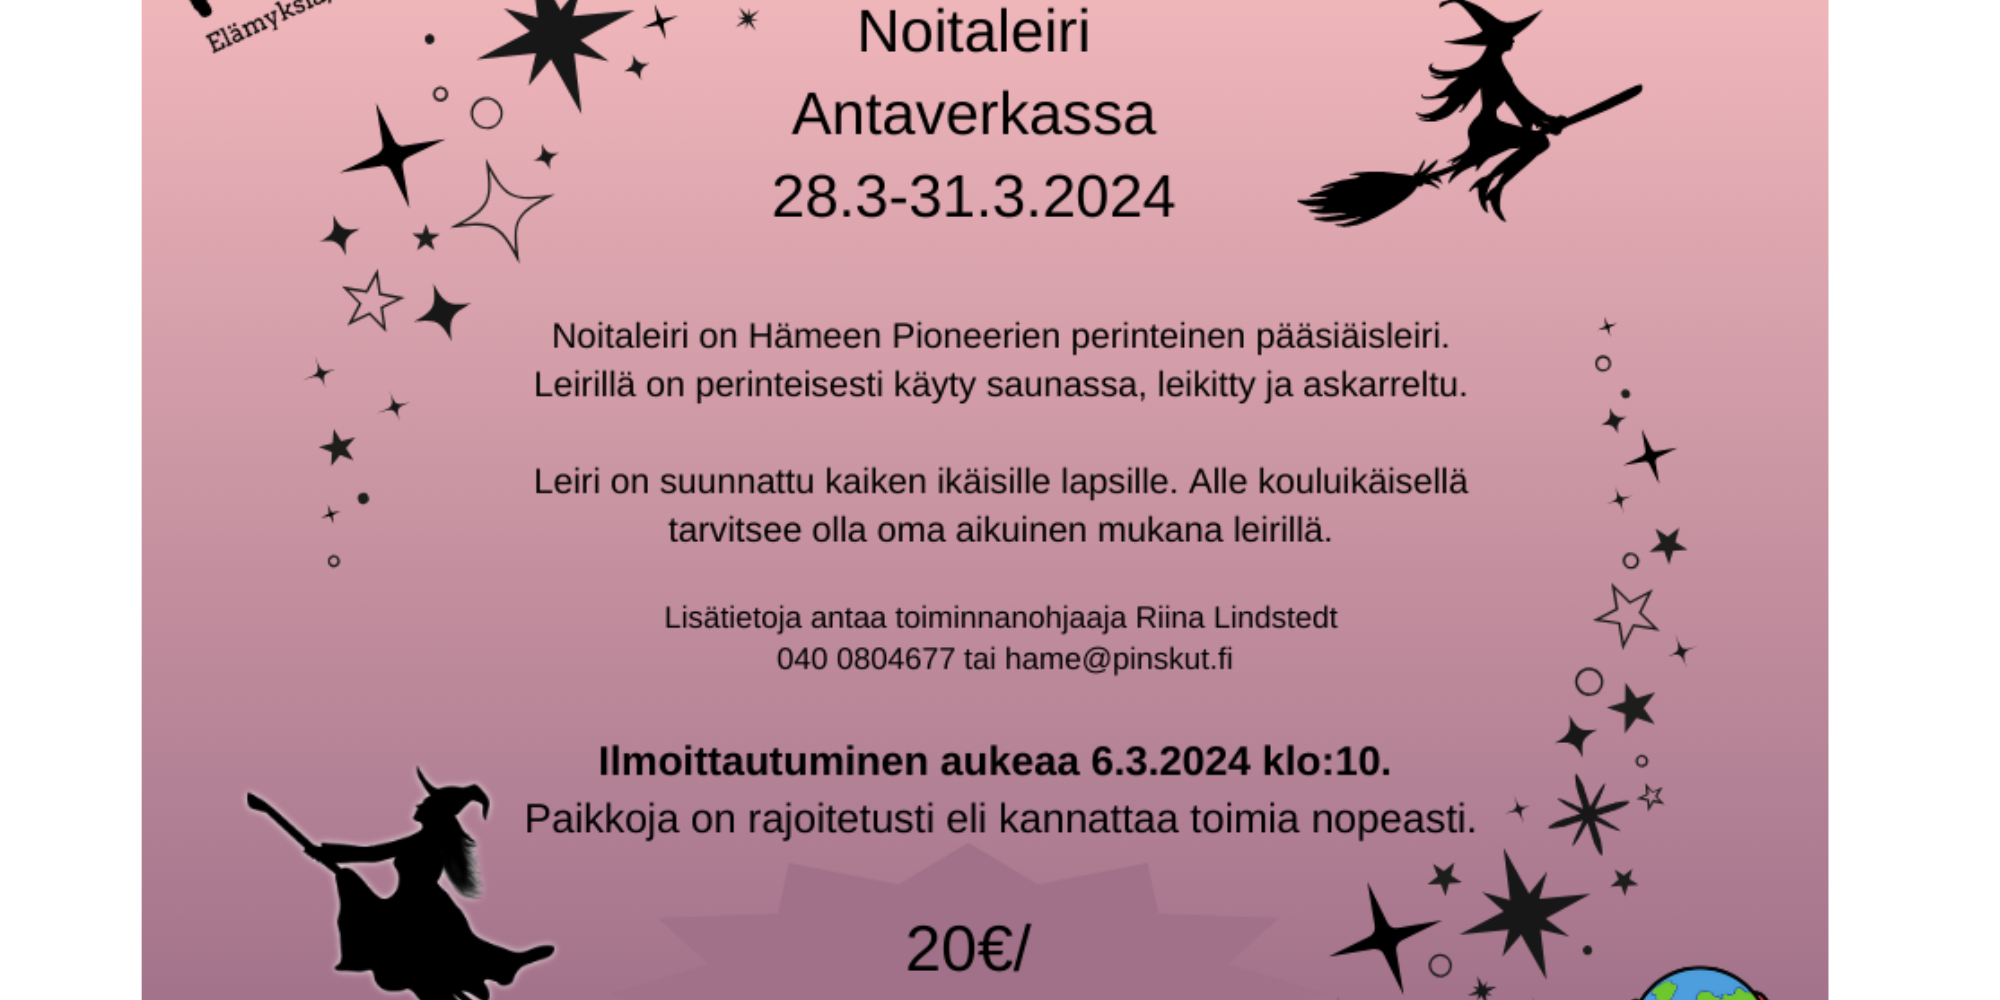 Noitaleiri Antaverkassa 28.3.-31.3.2024, logot ja noitia.